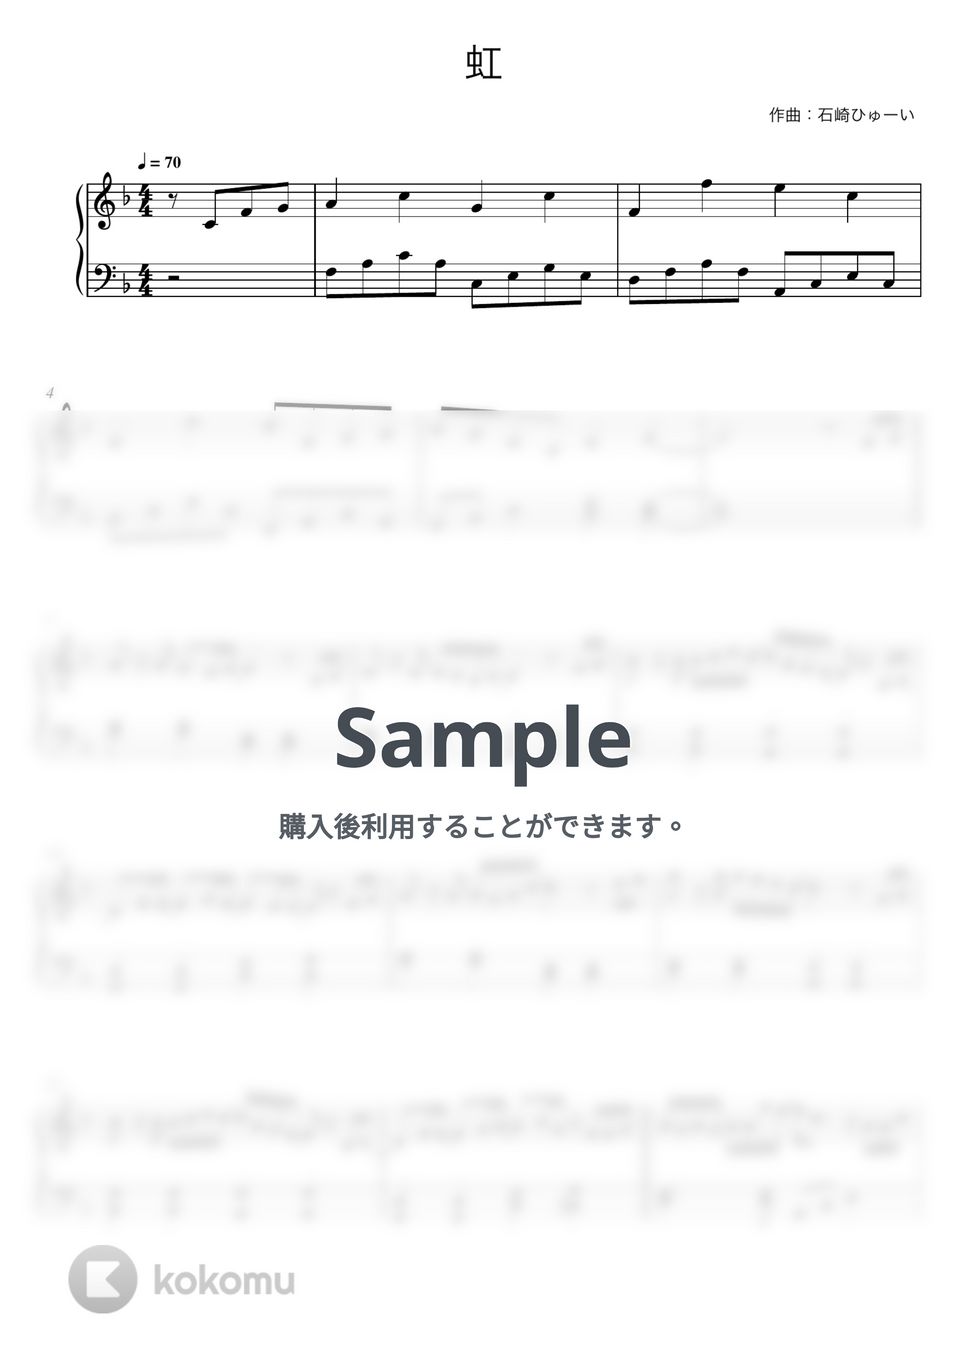 菅田将暉 - 虹 (ドラえもん / ピアノ初心者向け) by Piano Lovers. jp